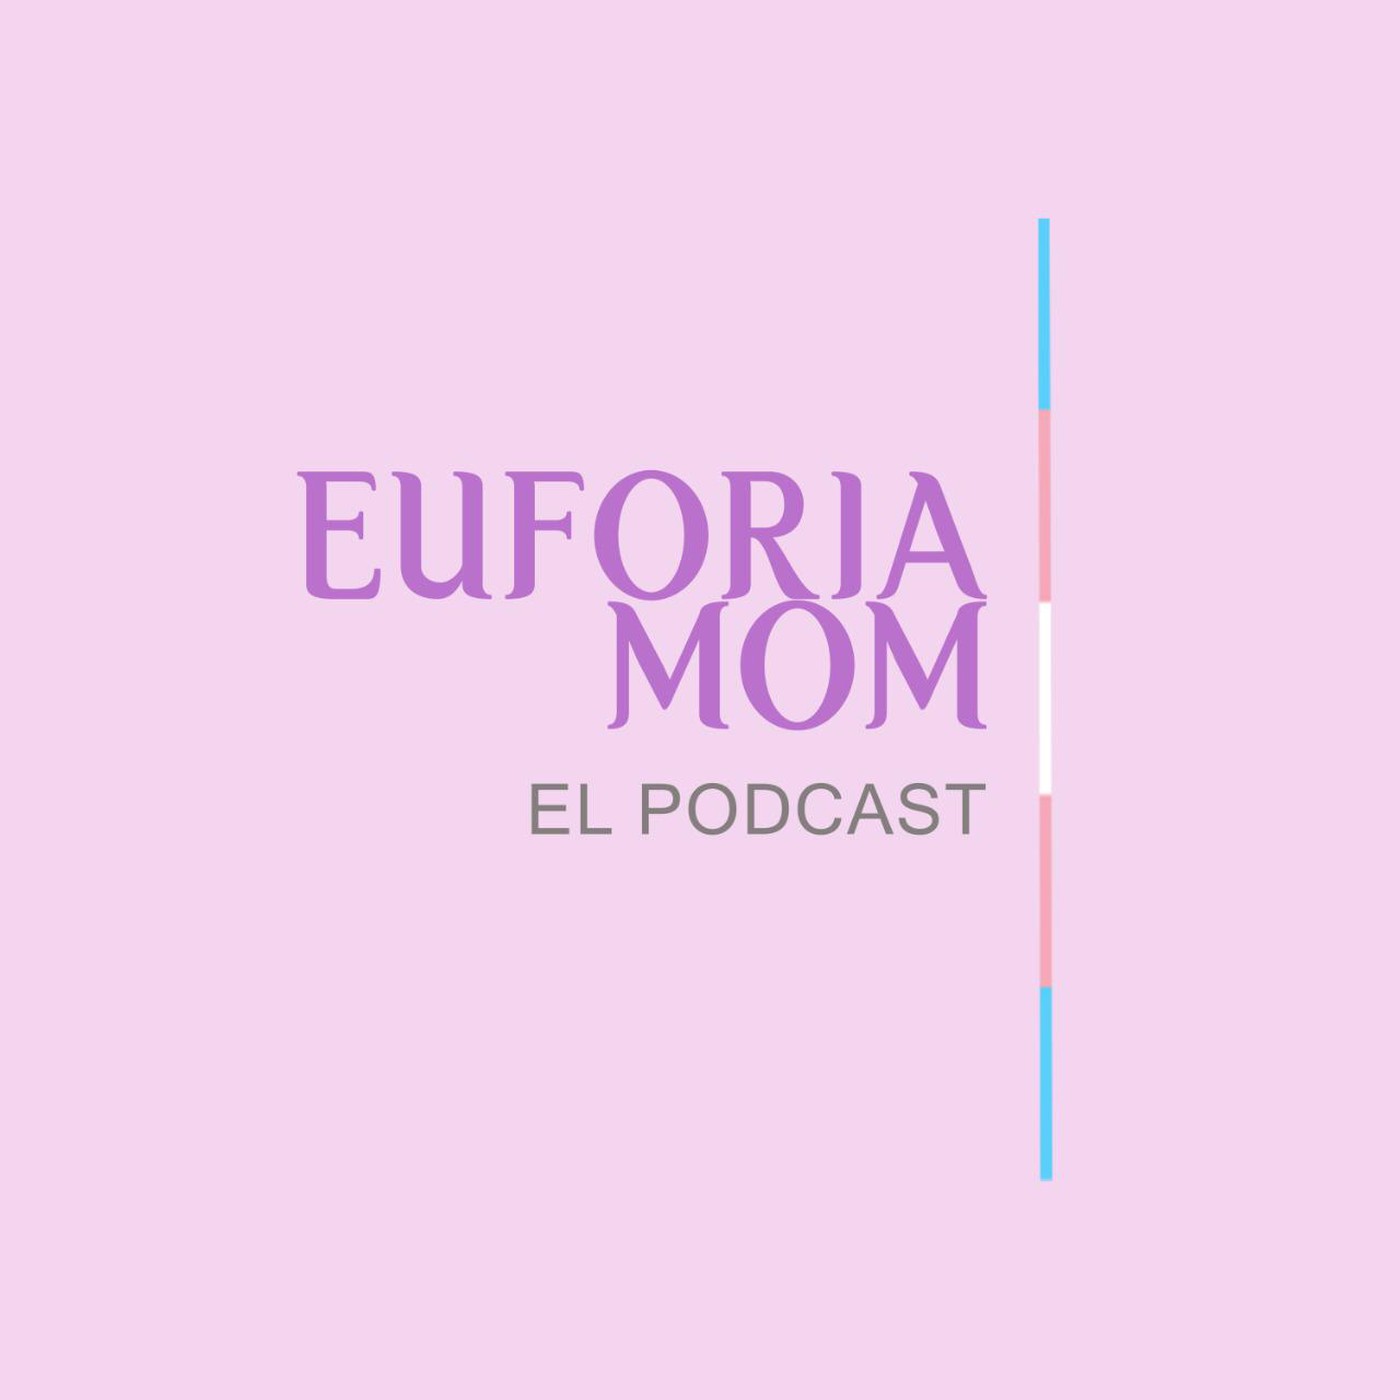 The euforiamom's Podcast